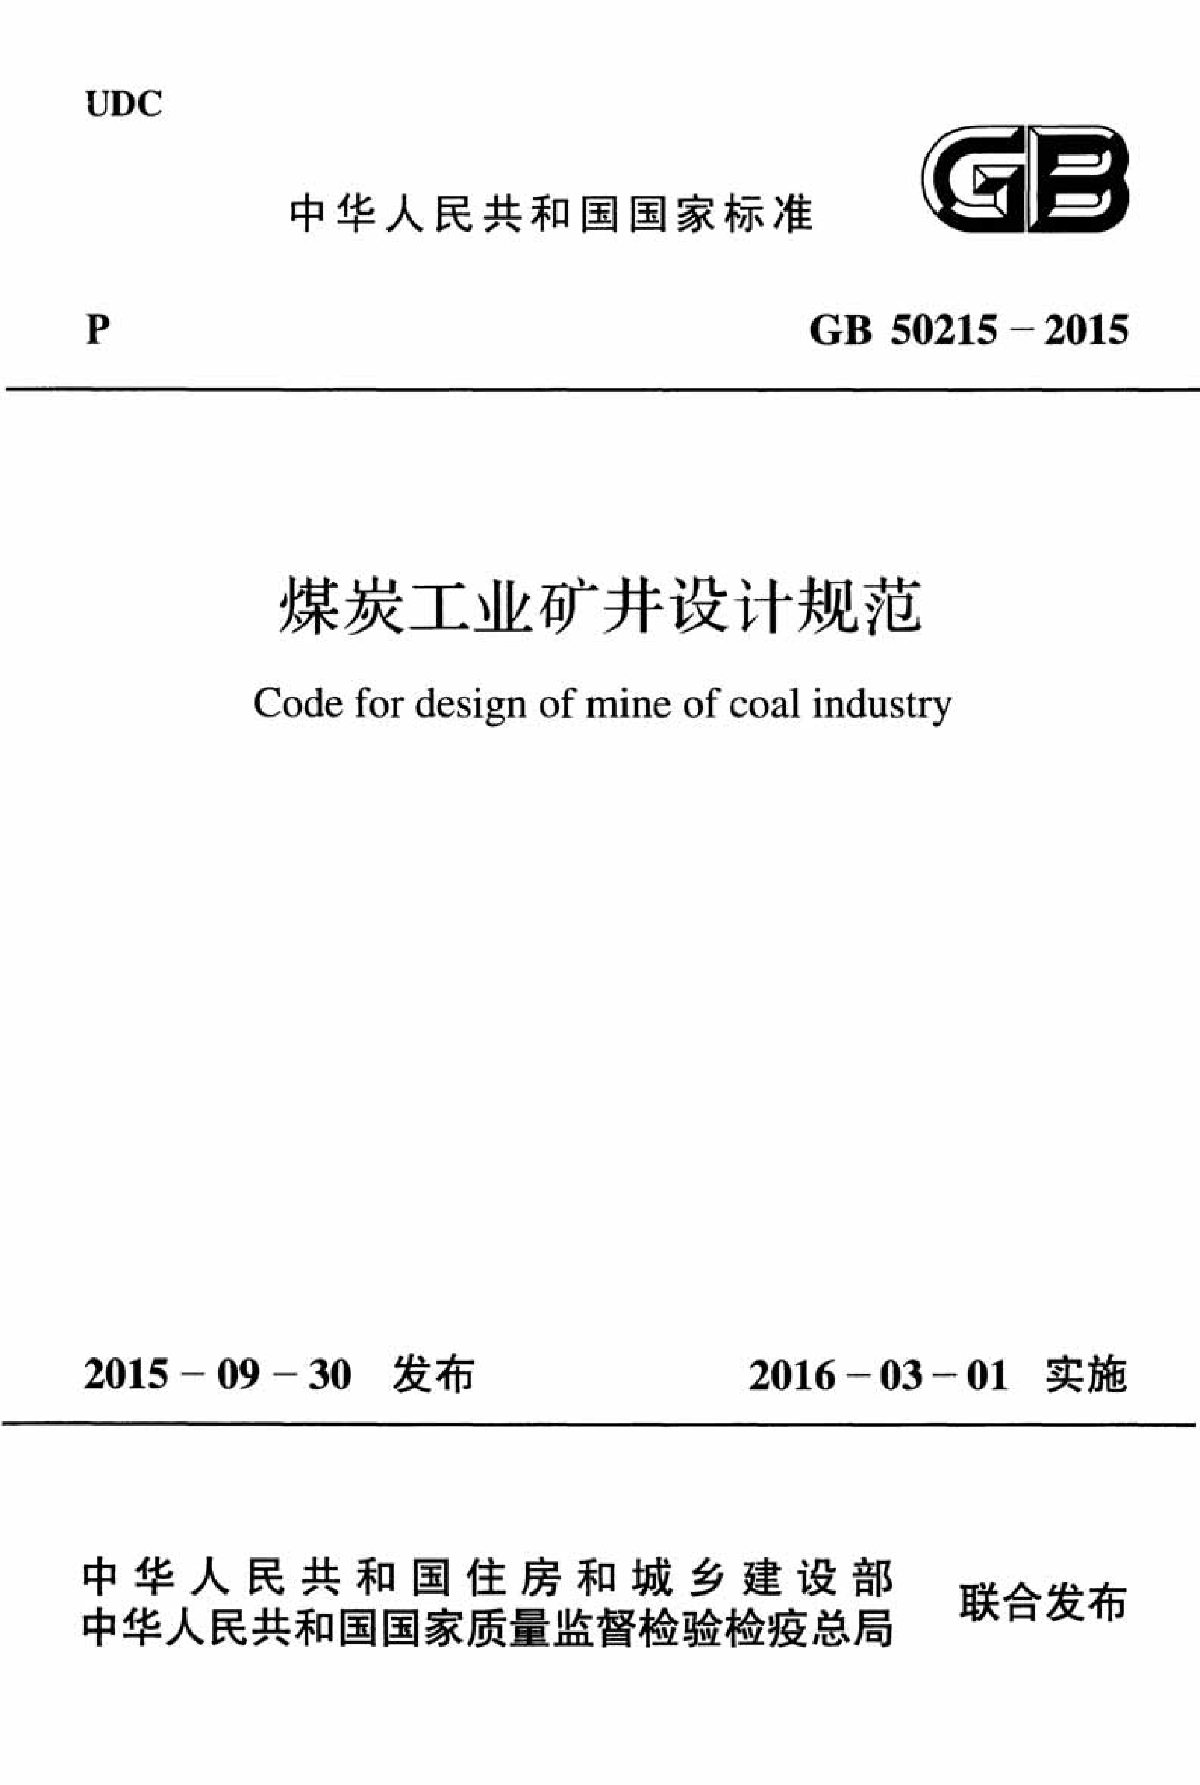 GB 50215-2015 煤炭工业矿井设计规范